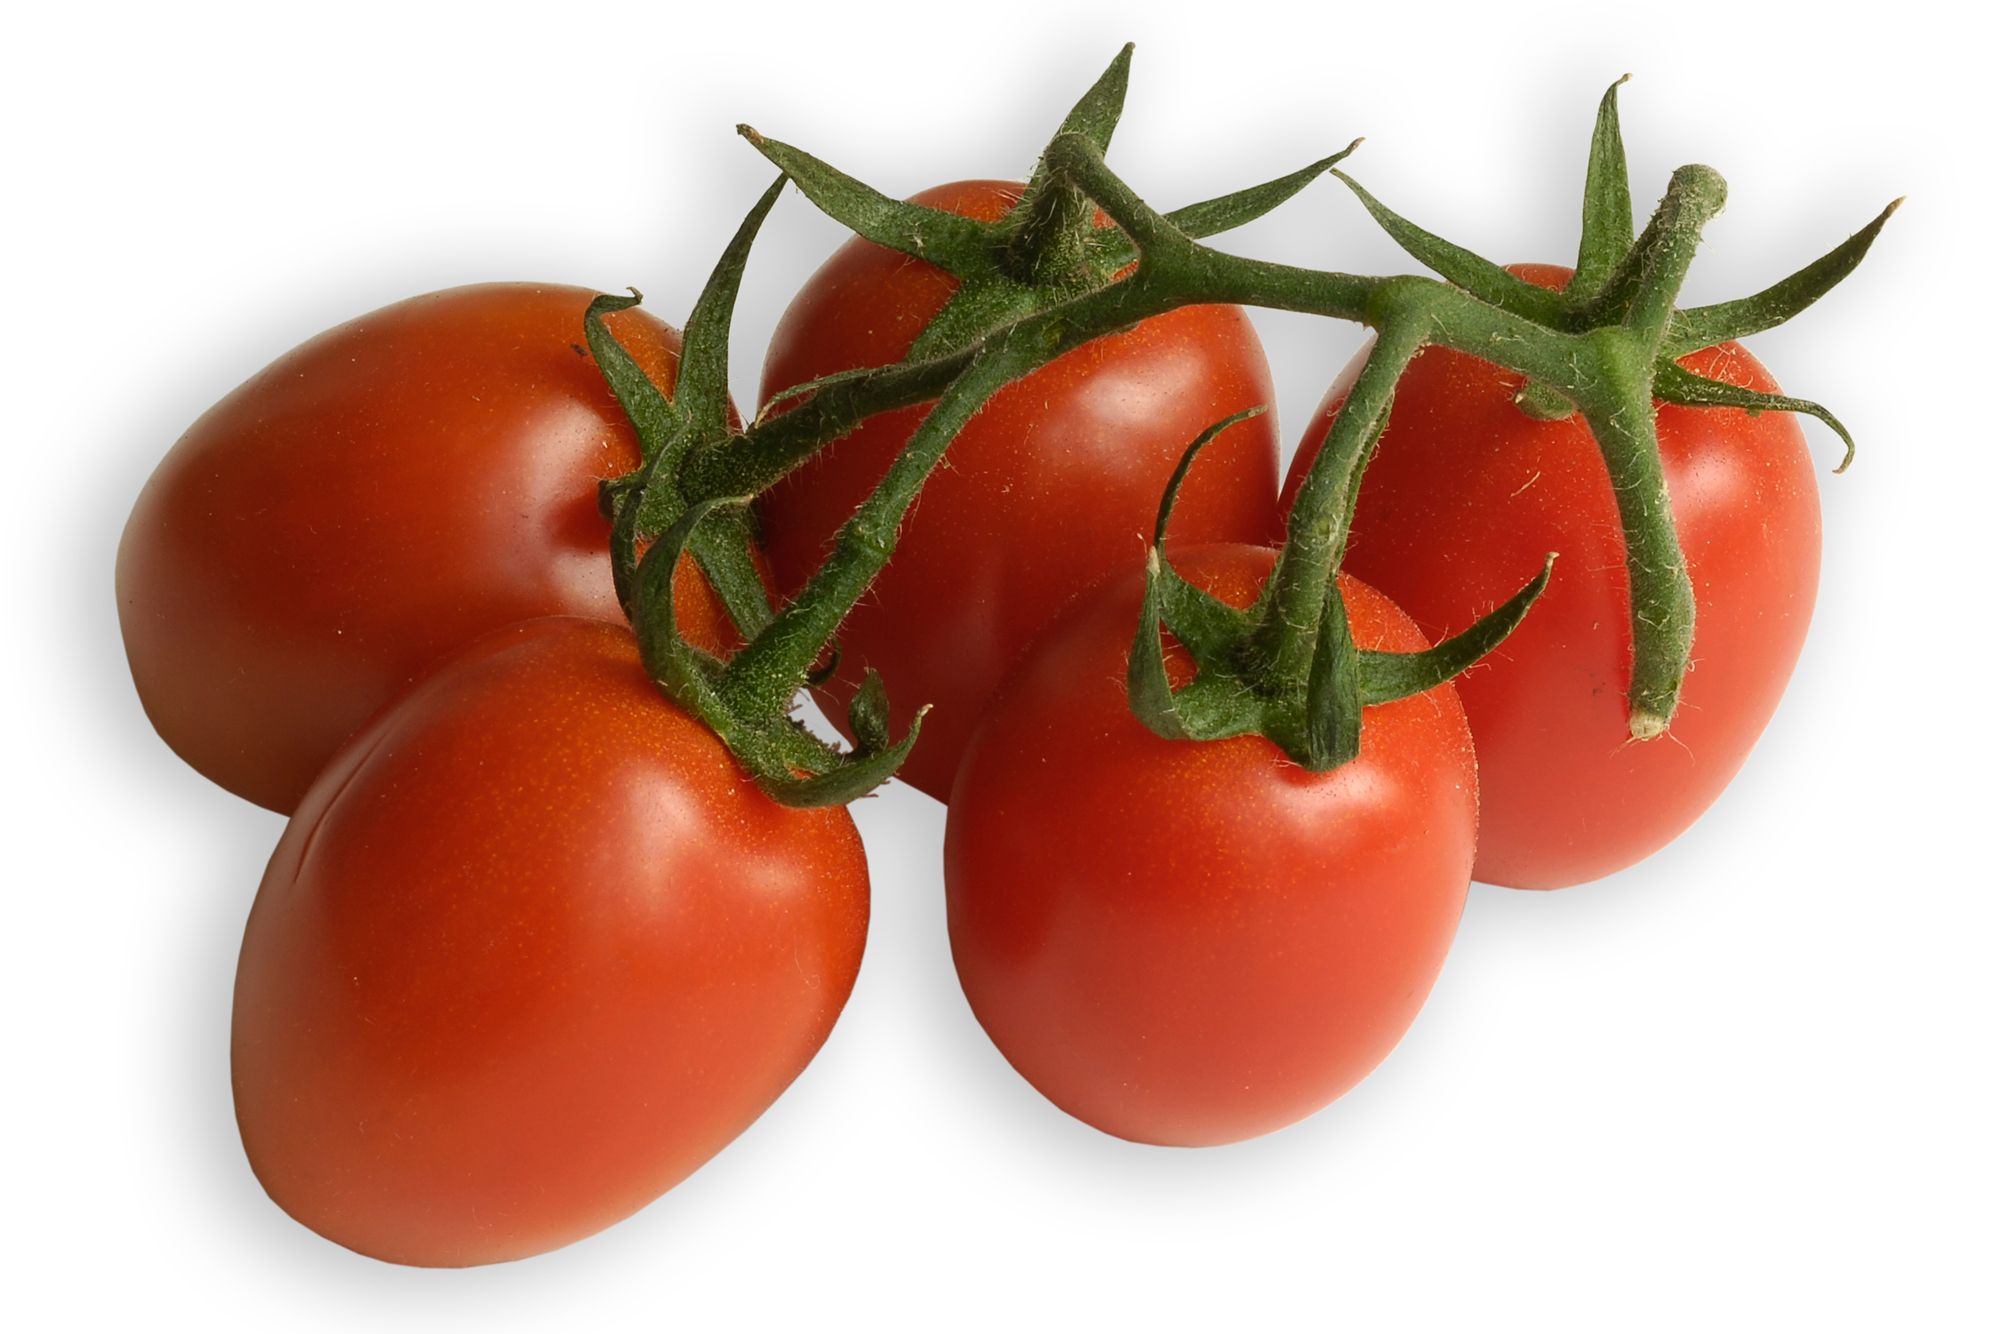 Eiertomaten, eine Sorte aus der großen Familie der Tomate